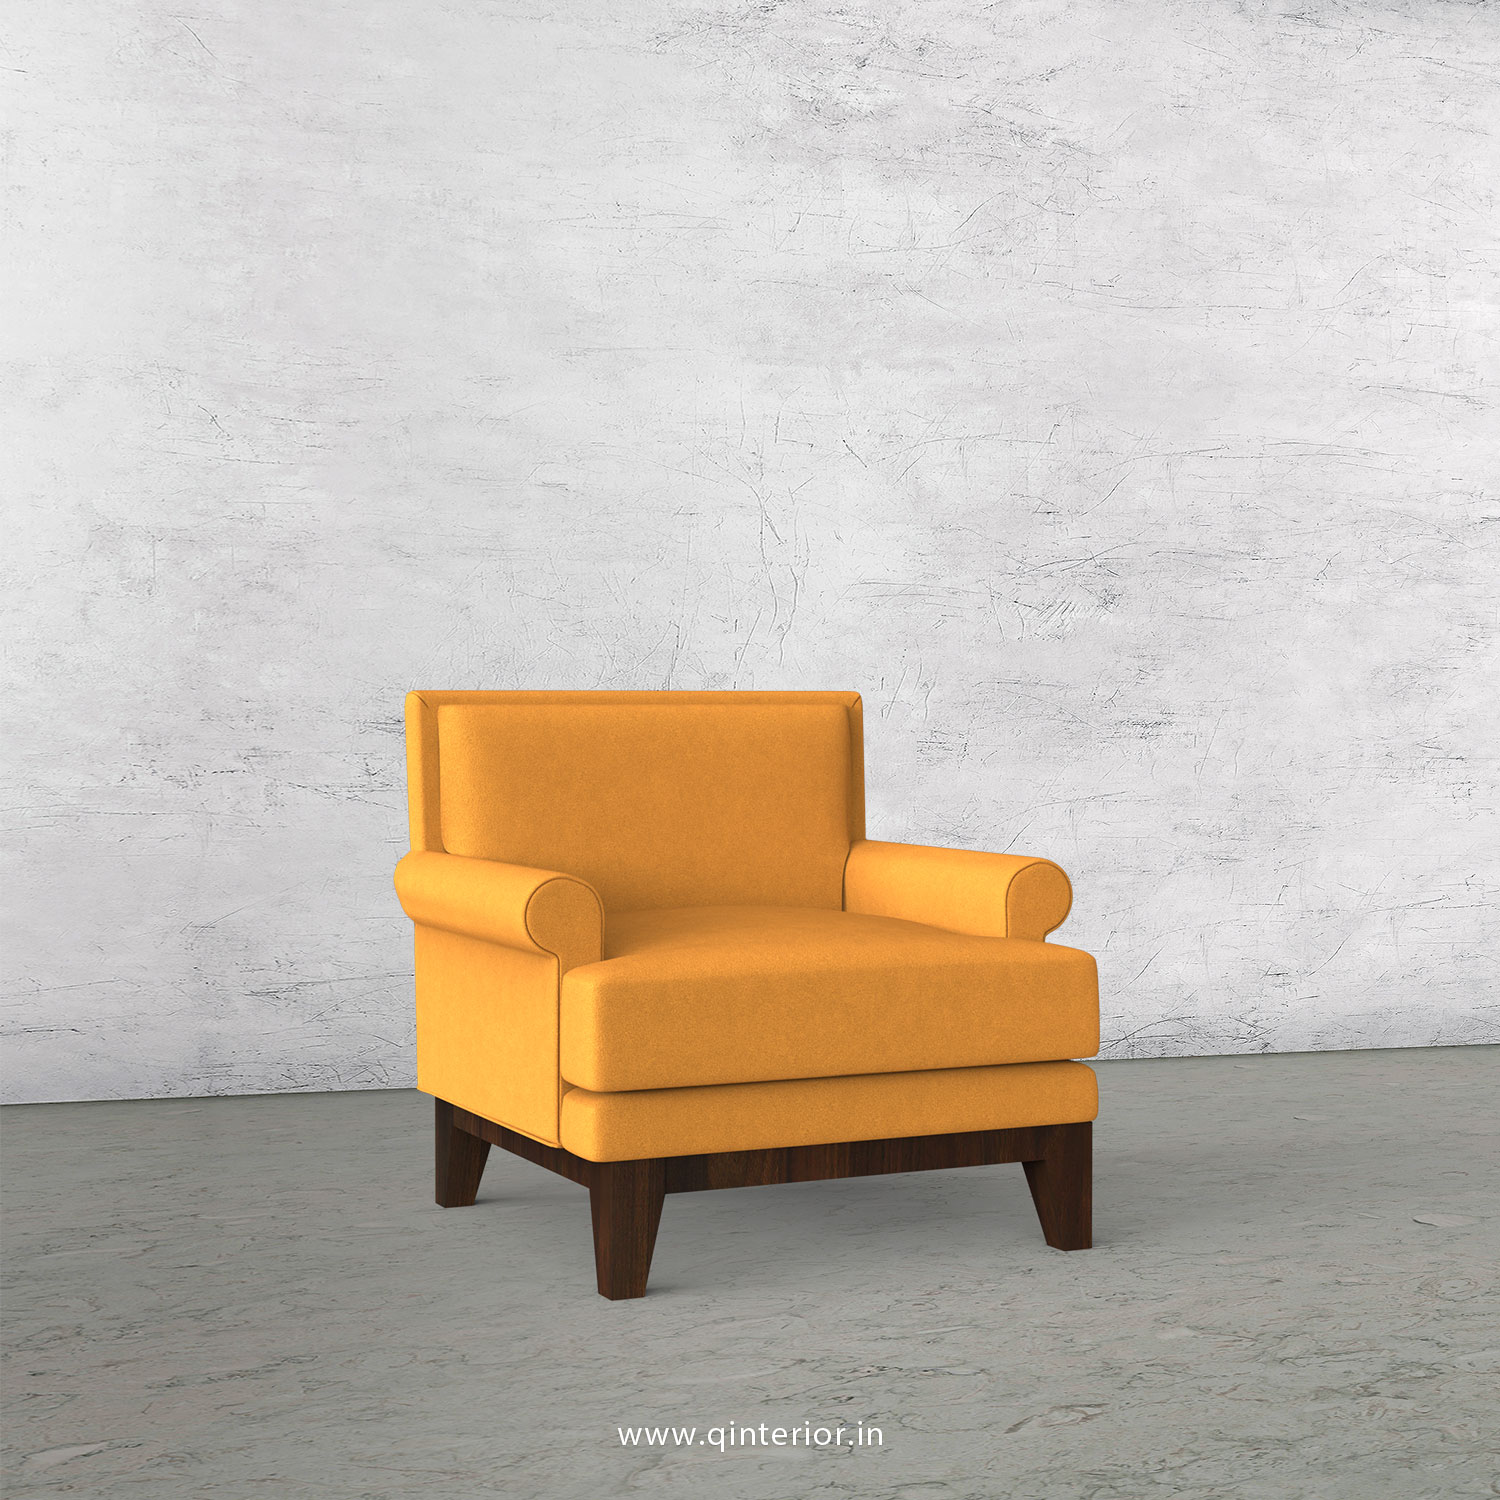 Aviana 1 Seater Sofa in Velvet Fabric - SFA001 VL18